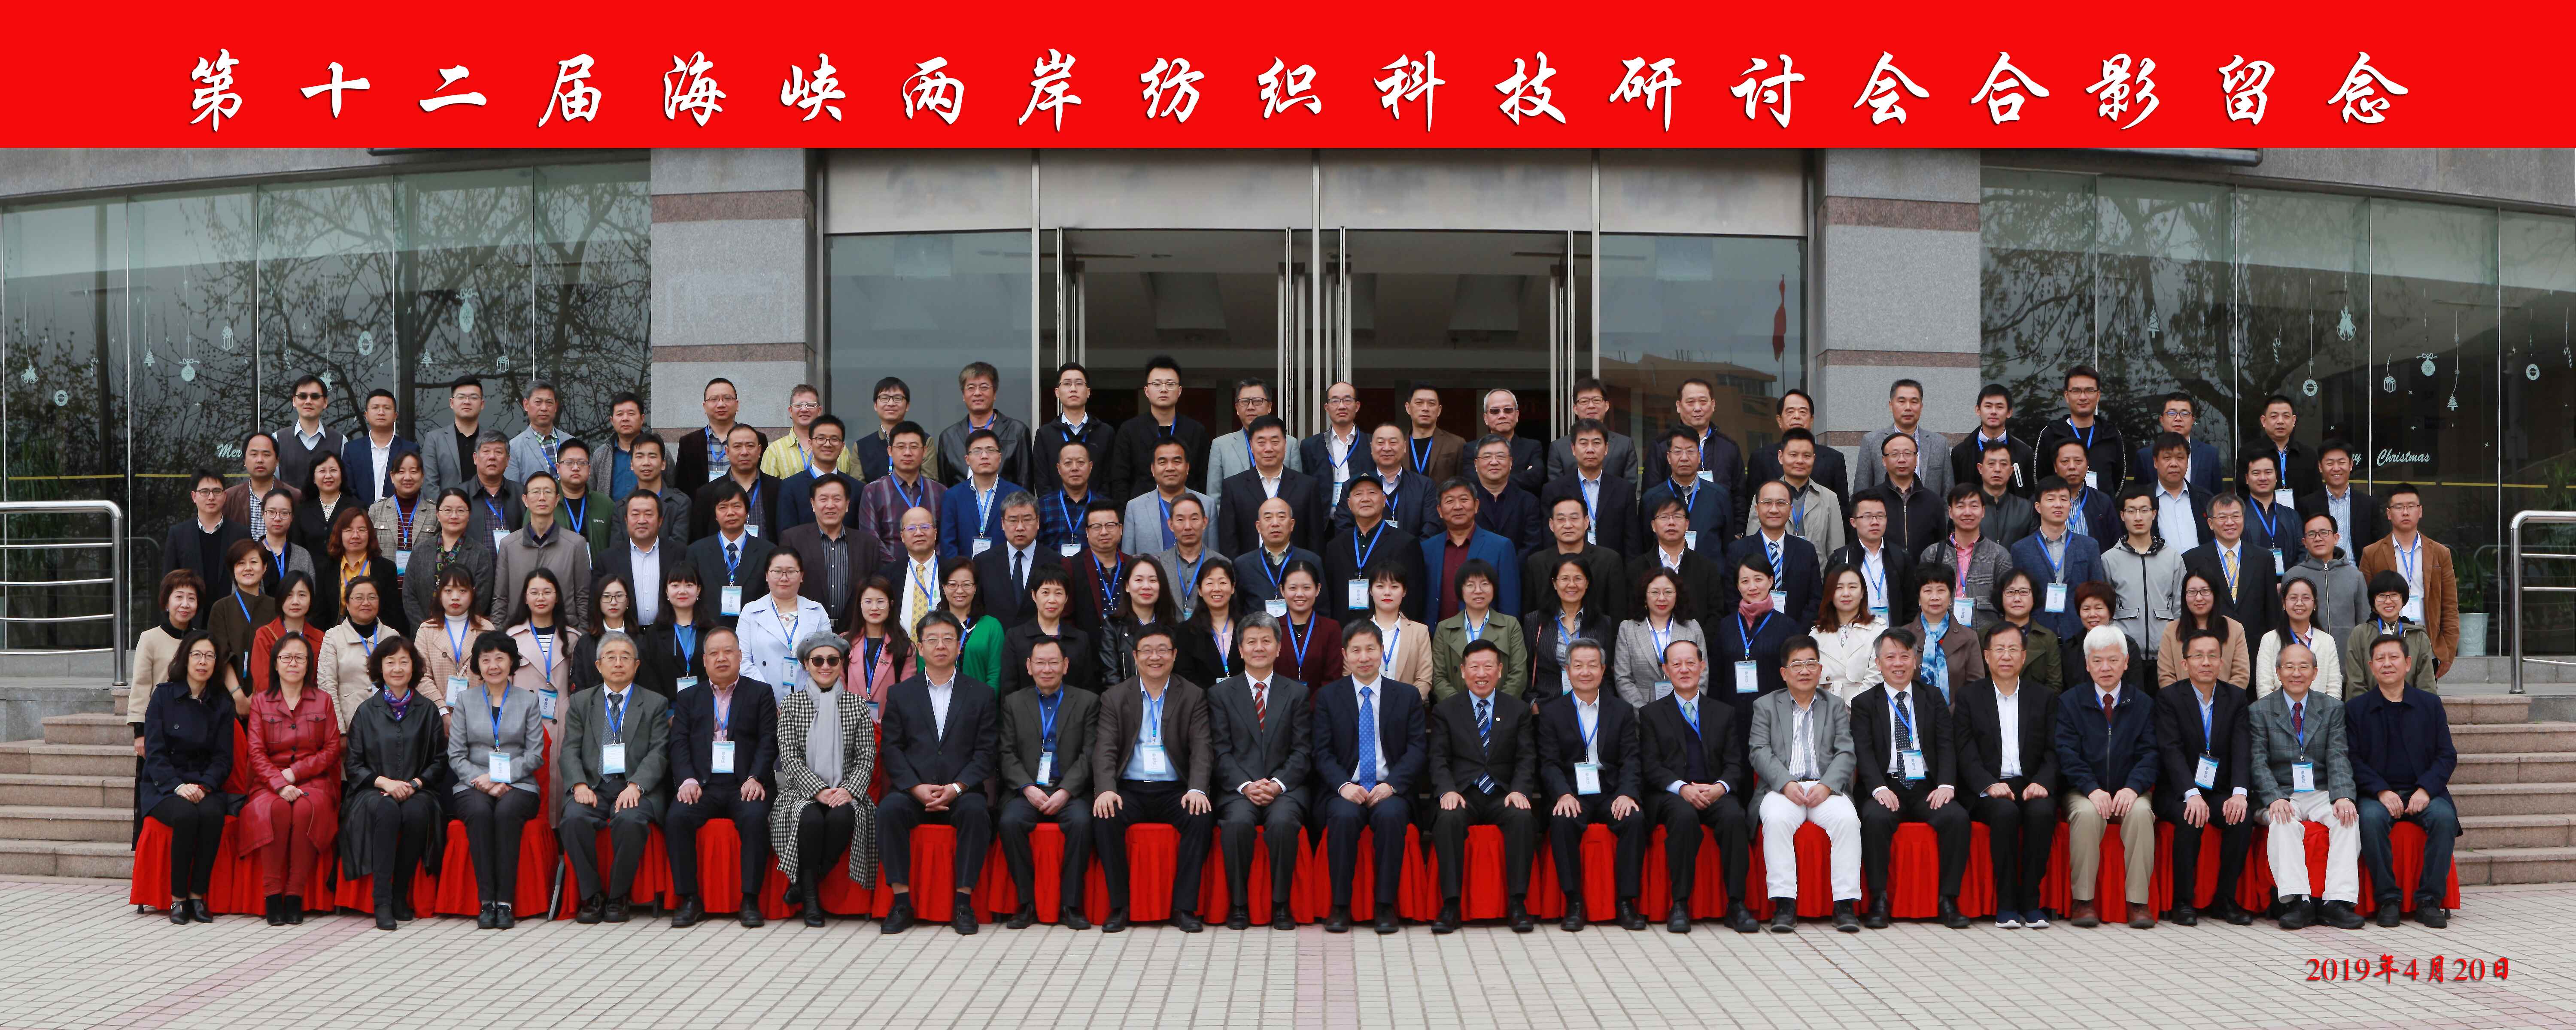 华夏科技董事长受邀出席第十二届海峡两岸纺织科技研讨会